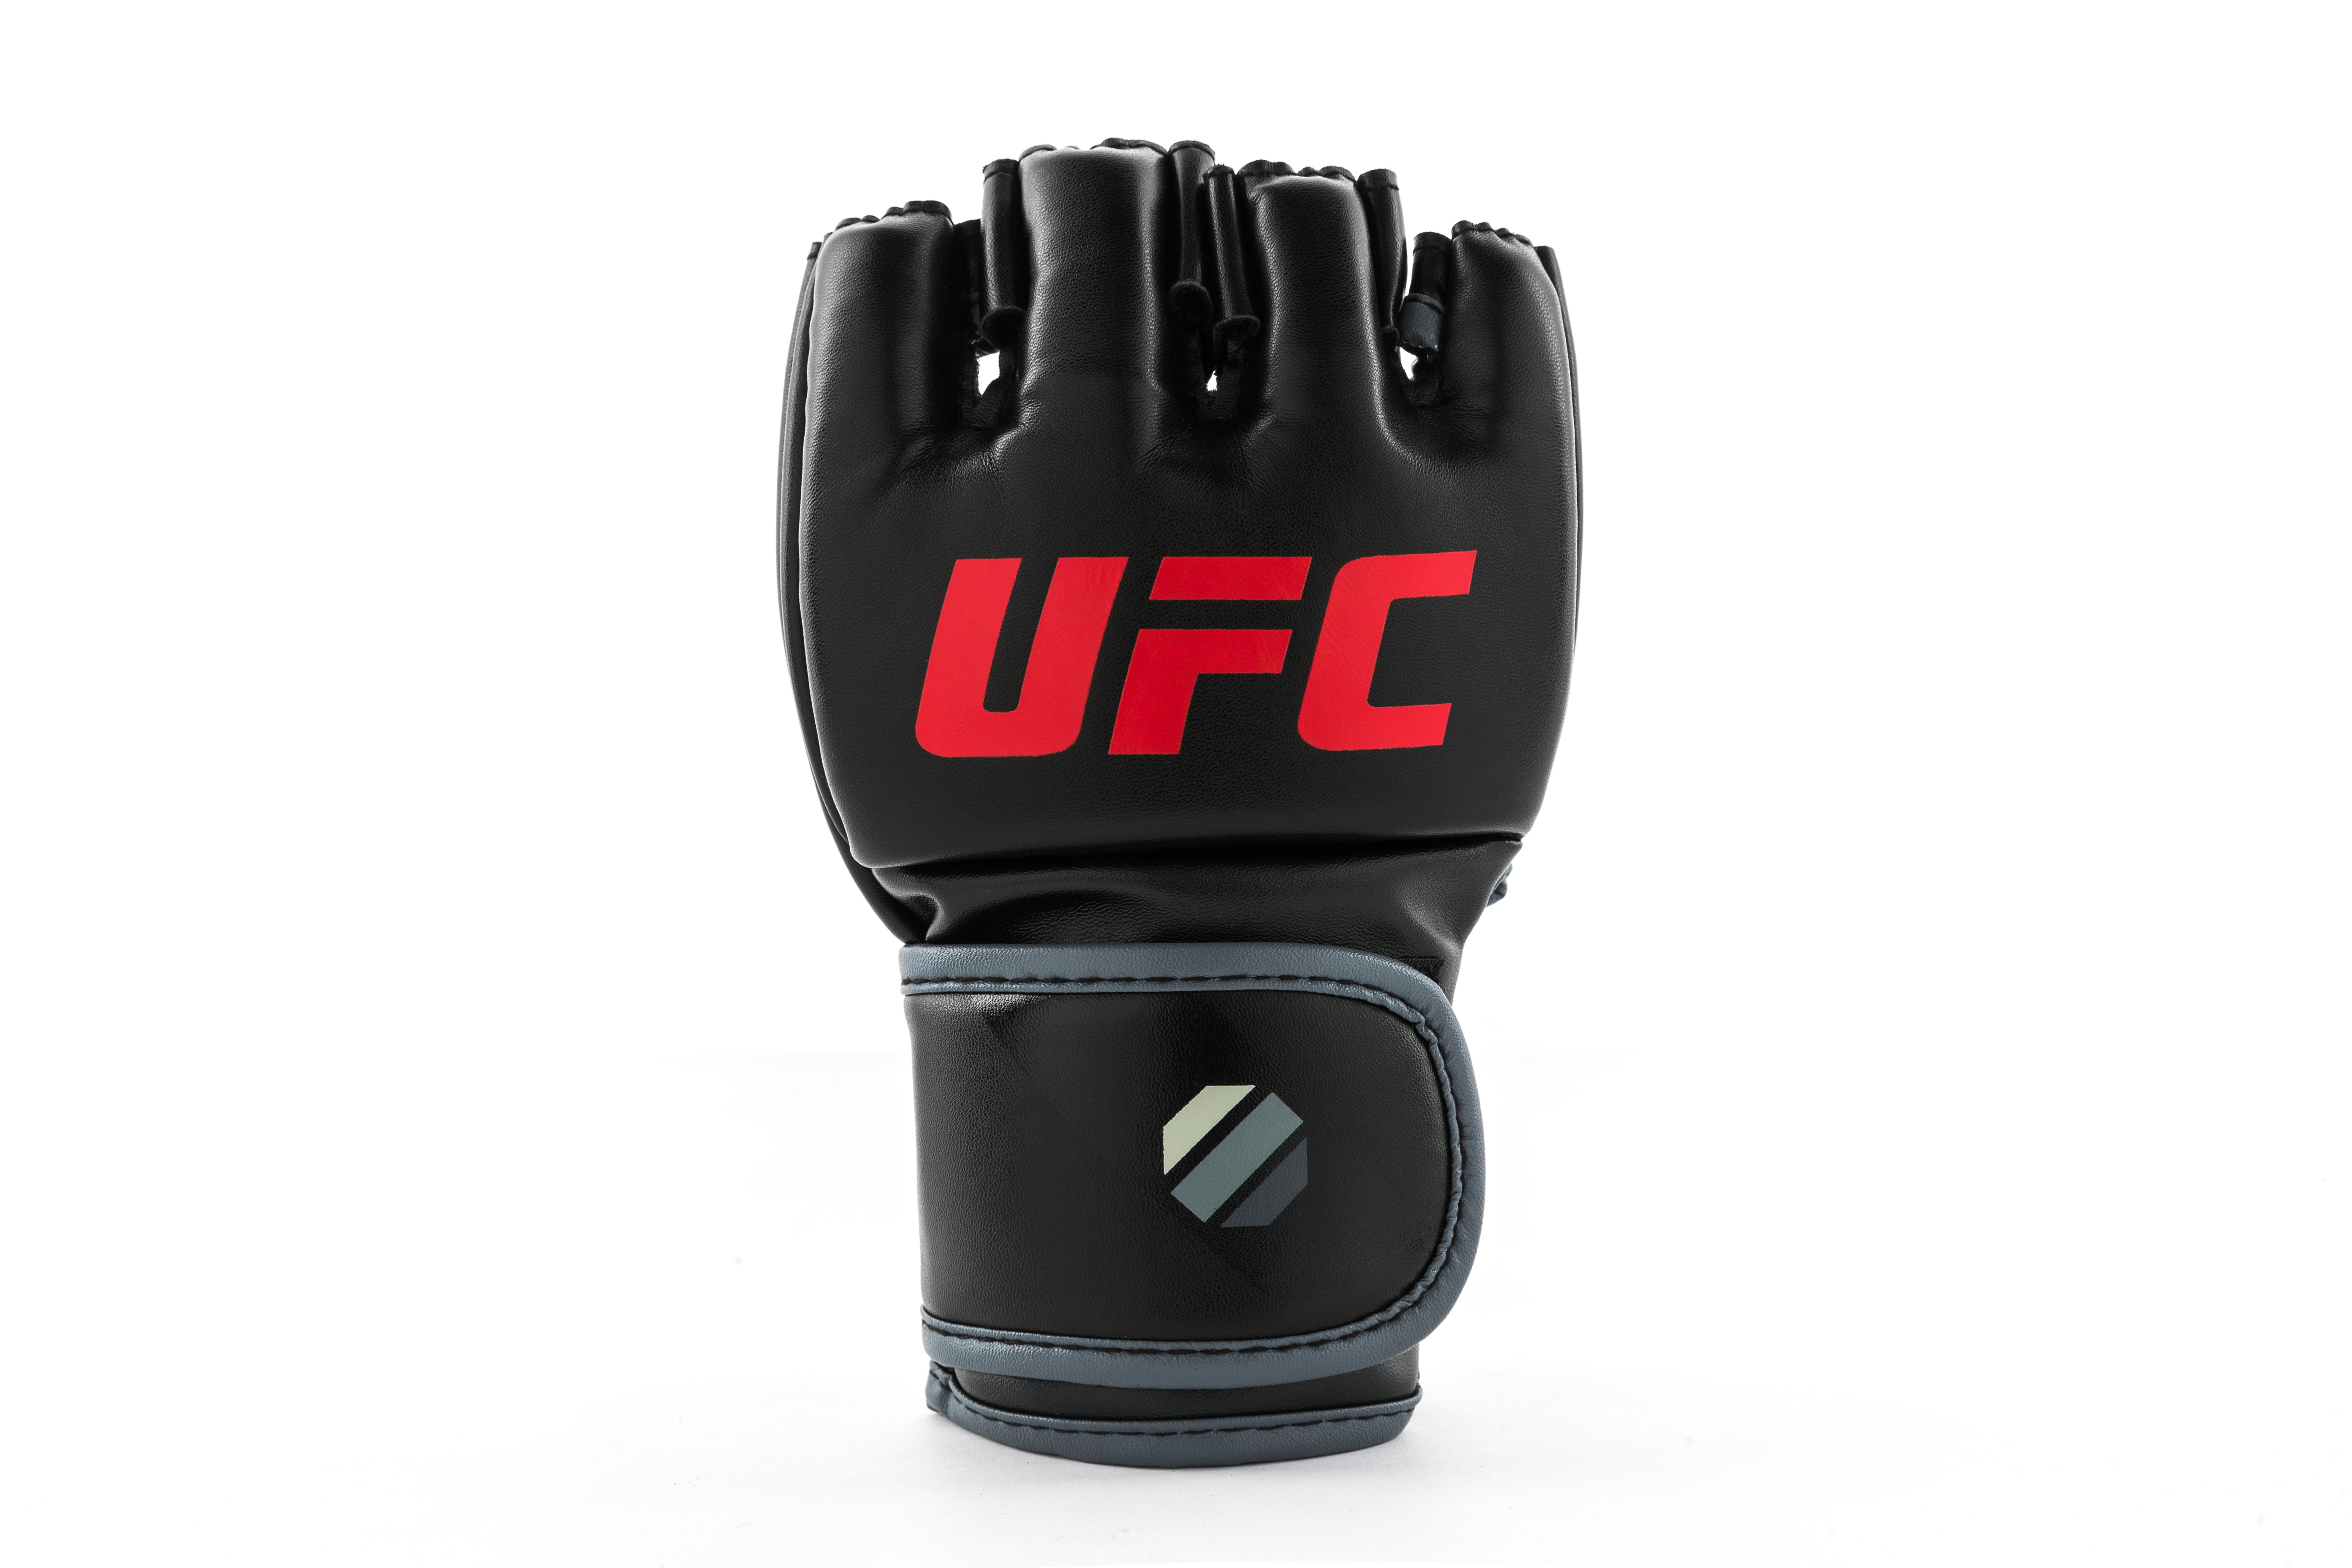 UFC MMA Gloves S/M